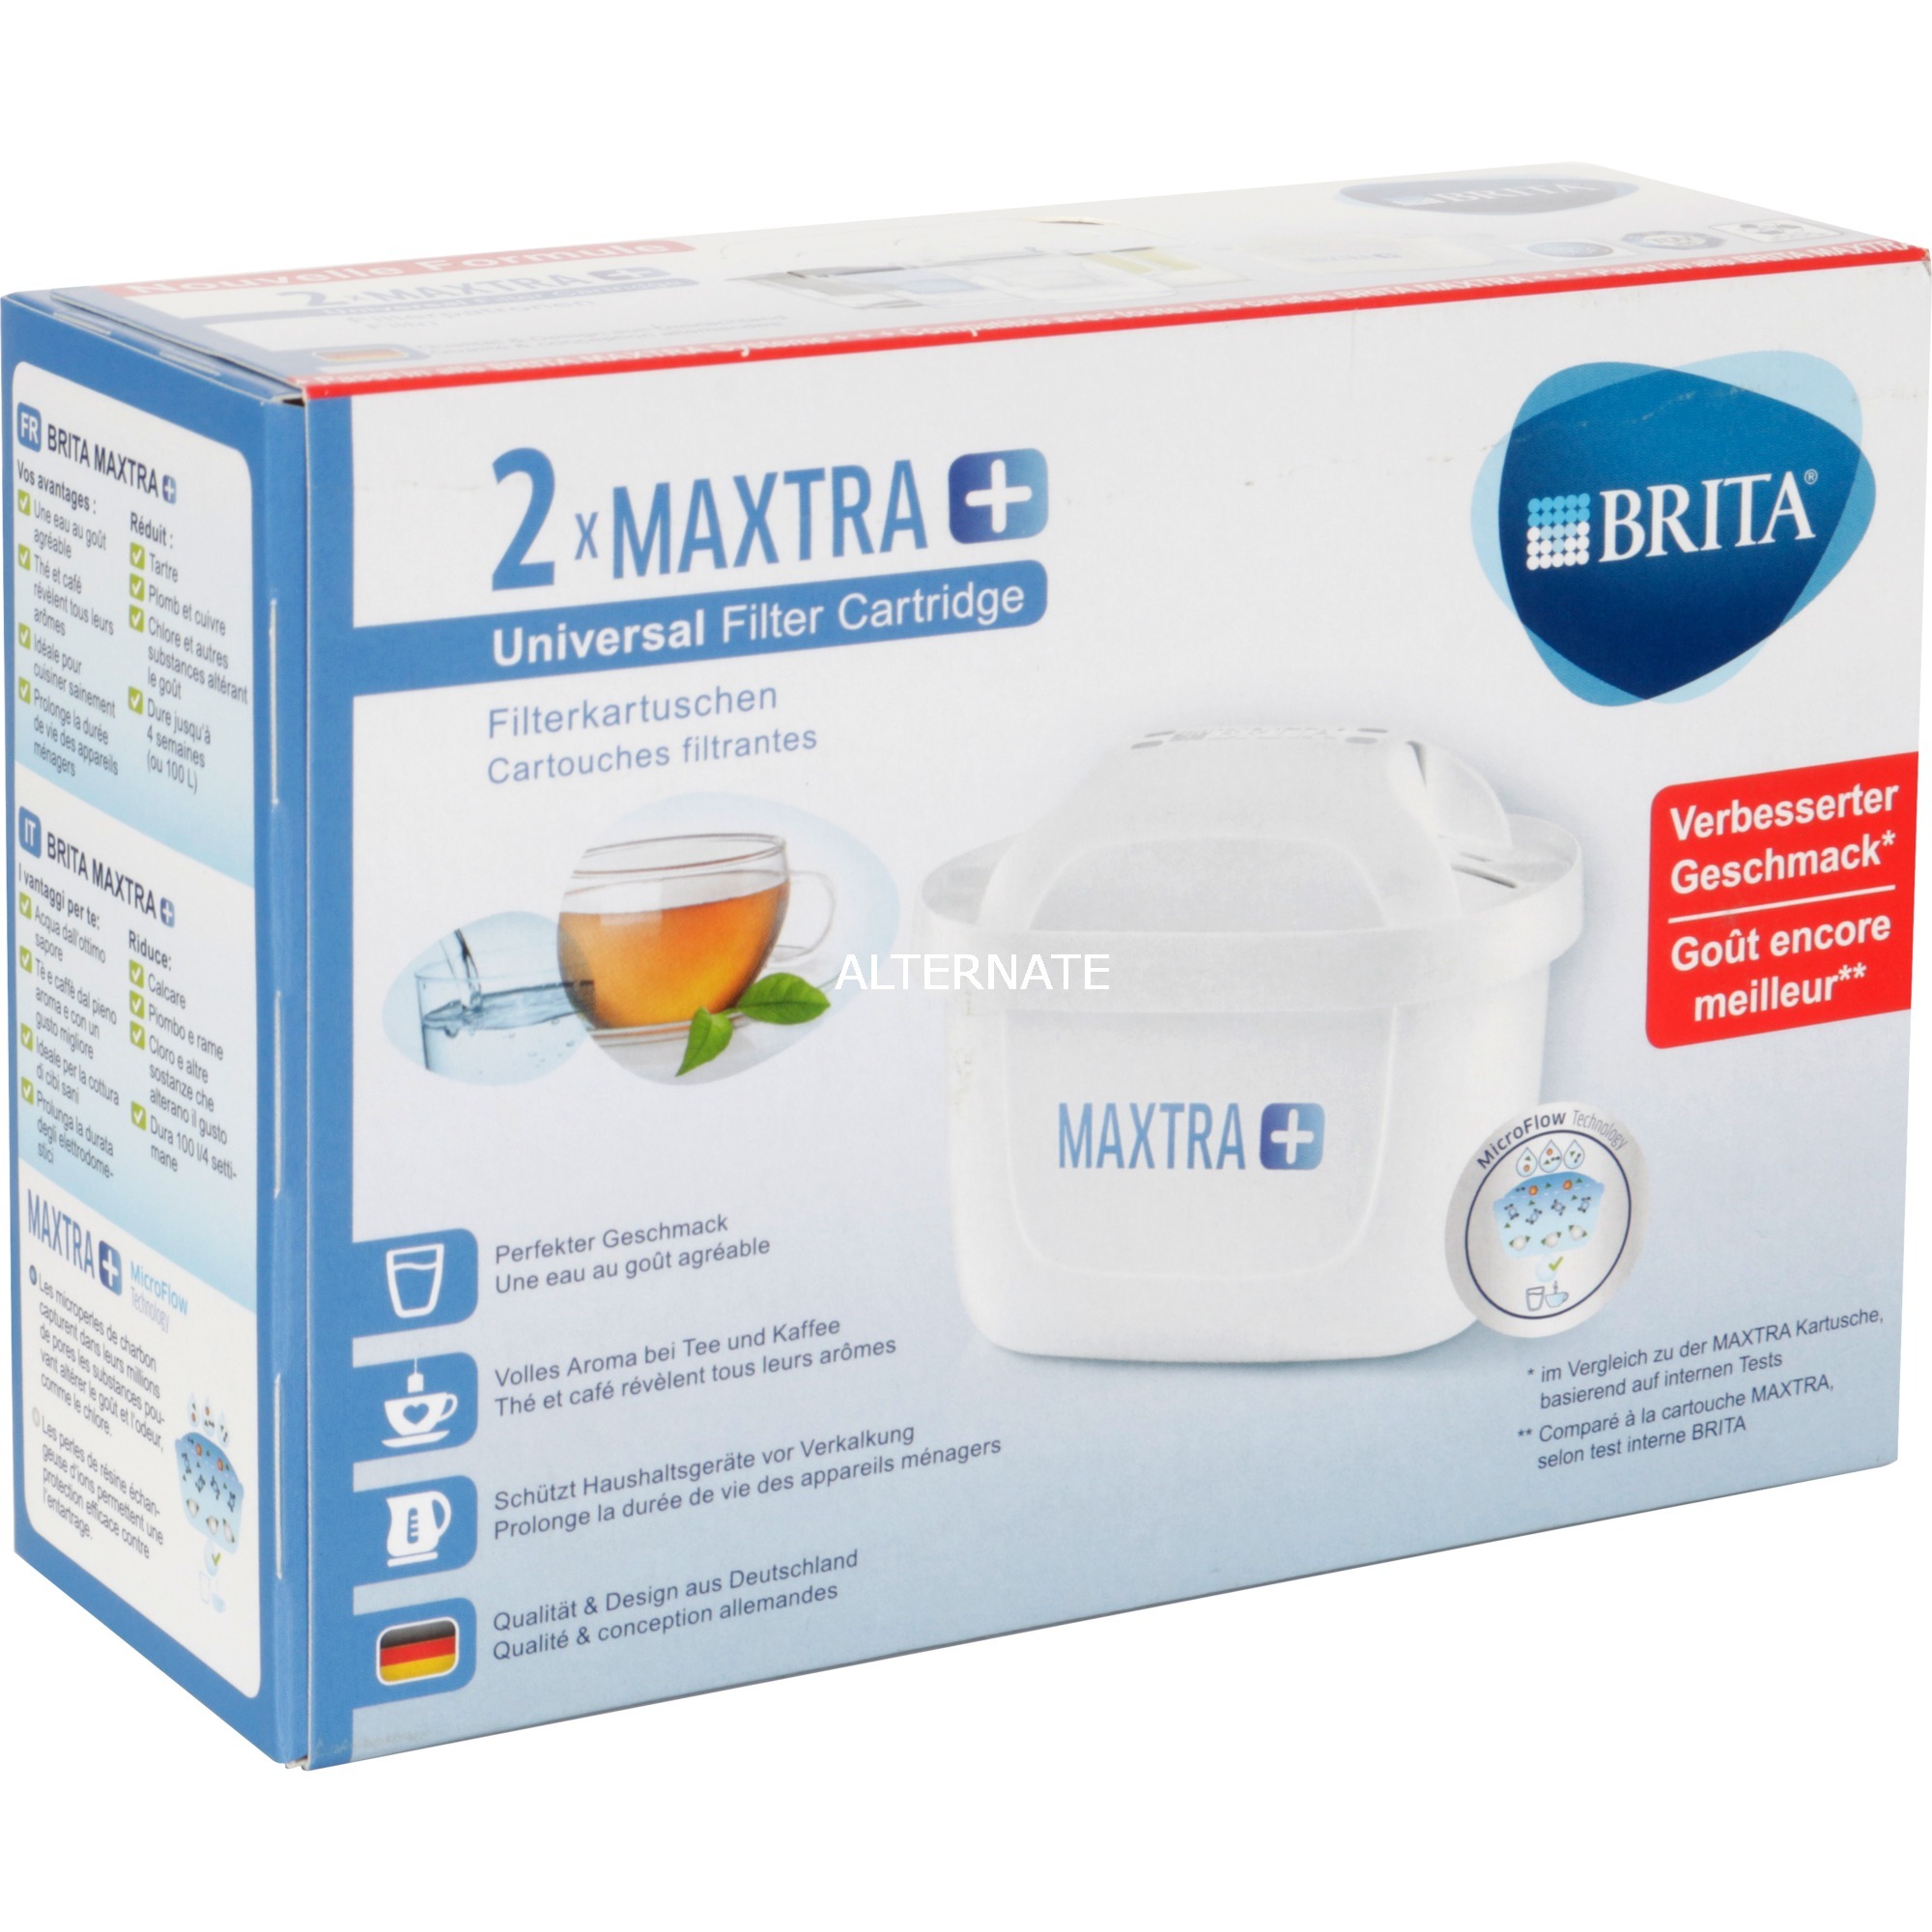 Image of Alternate - MAXTRA+ Pack 2, Wasserfilter online einkaufen bei Alternate